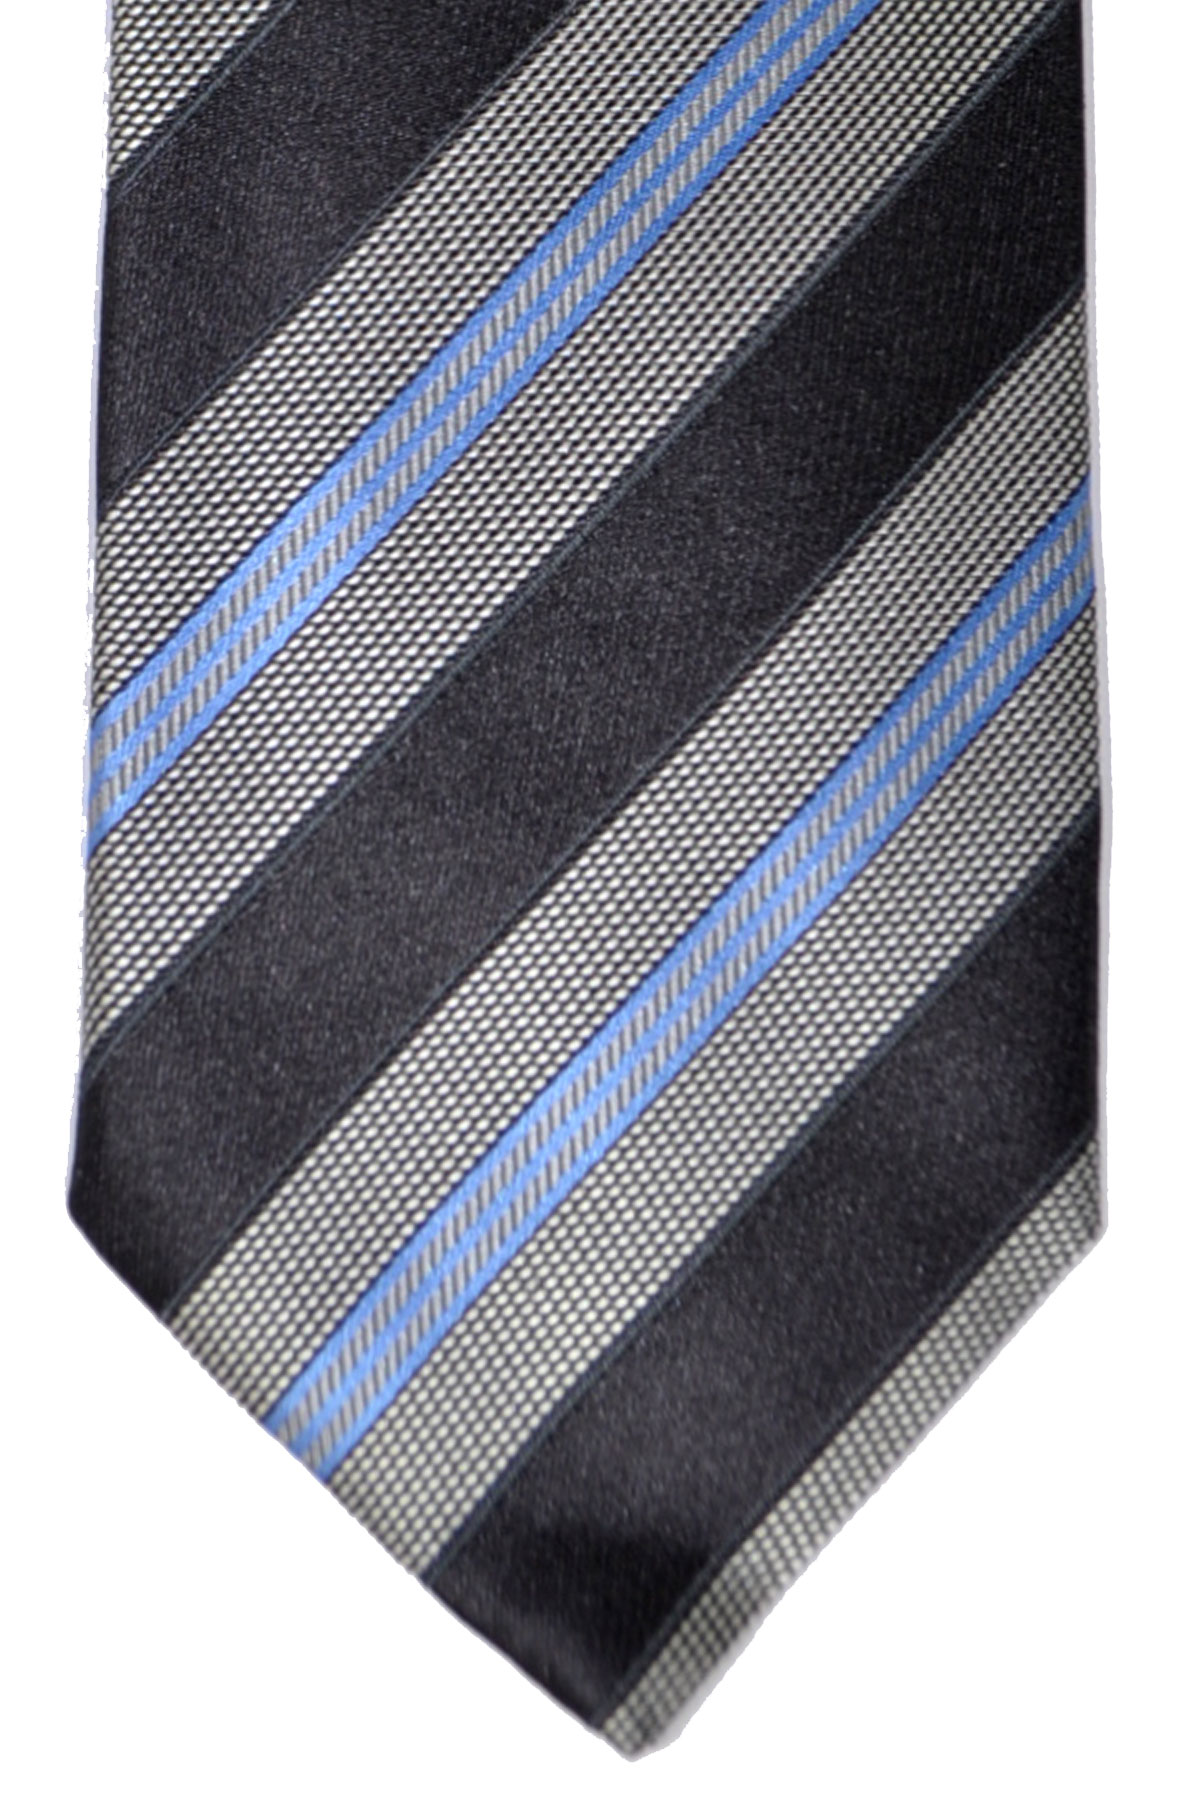 Canali Necktie